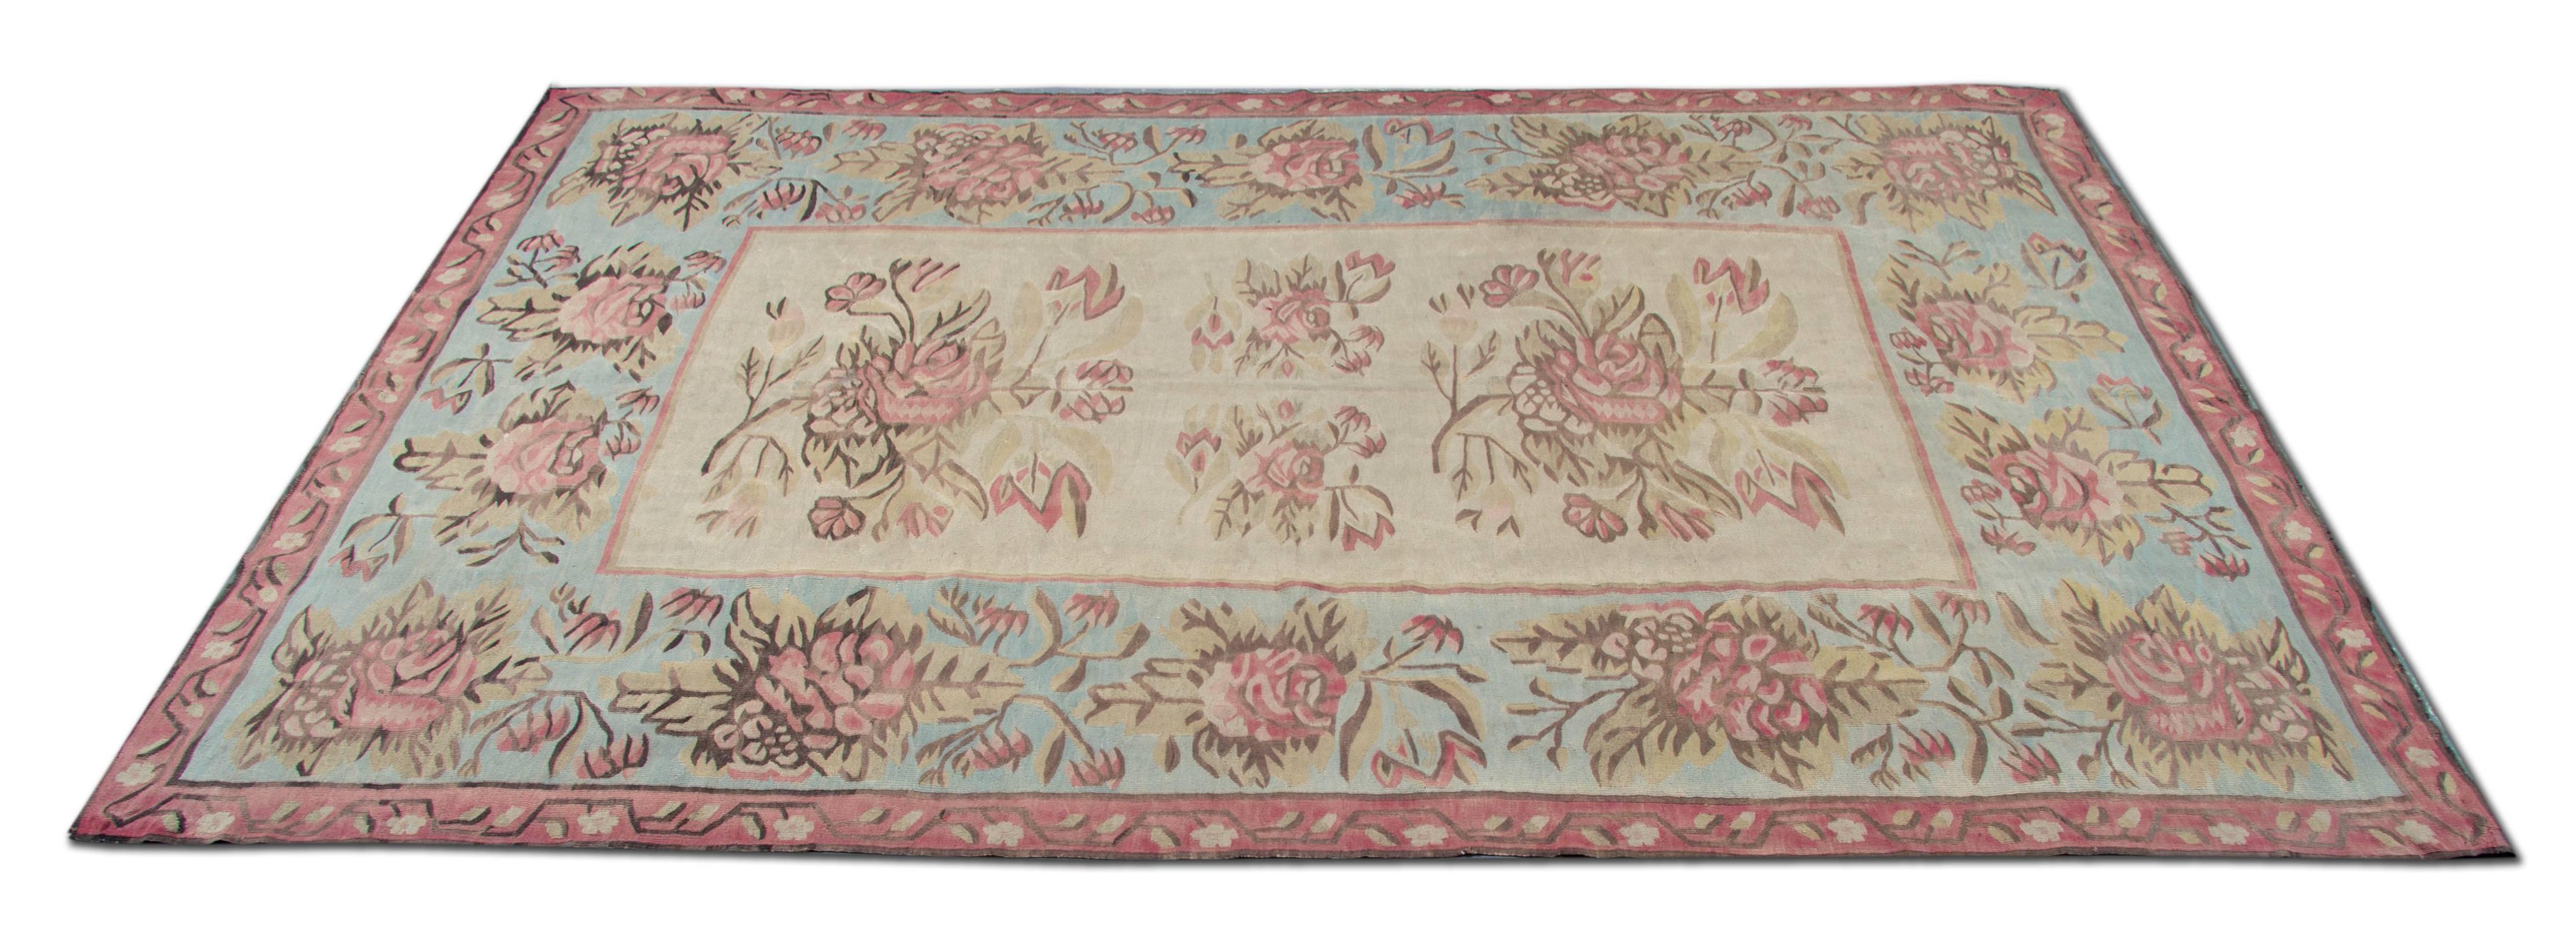 Bessarabische Kelims sind die übliche Bezeichnung für Teppiche in Flor- und Gobelintechnik, die im späten 19. und frühen 20. Jahrhundert in den russischen Provinzen sowie in der Ukraine und Moldawien entstanden sind. Dies ist ein Beispiel für ein